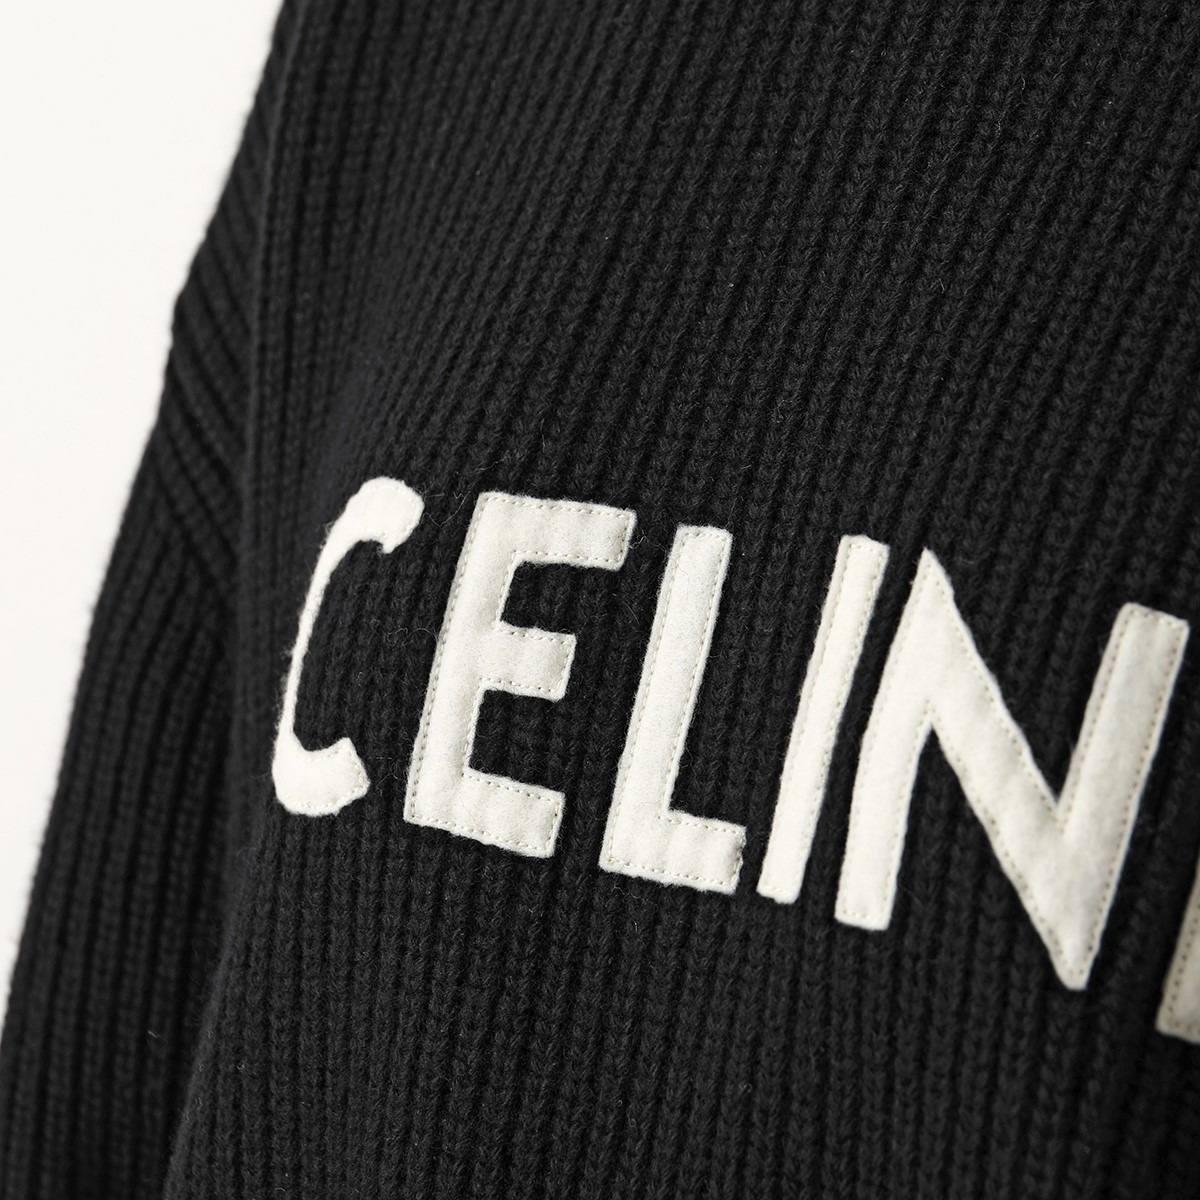 CELINE セリーヌ ニット 2A09T423P.38NO レディース ウール リブ セーター オーバーサイズ クルーネック ロゴパッチ |  インポートセレクト musee